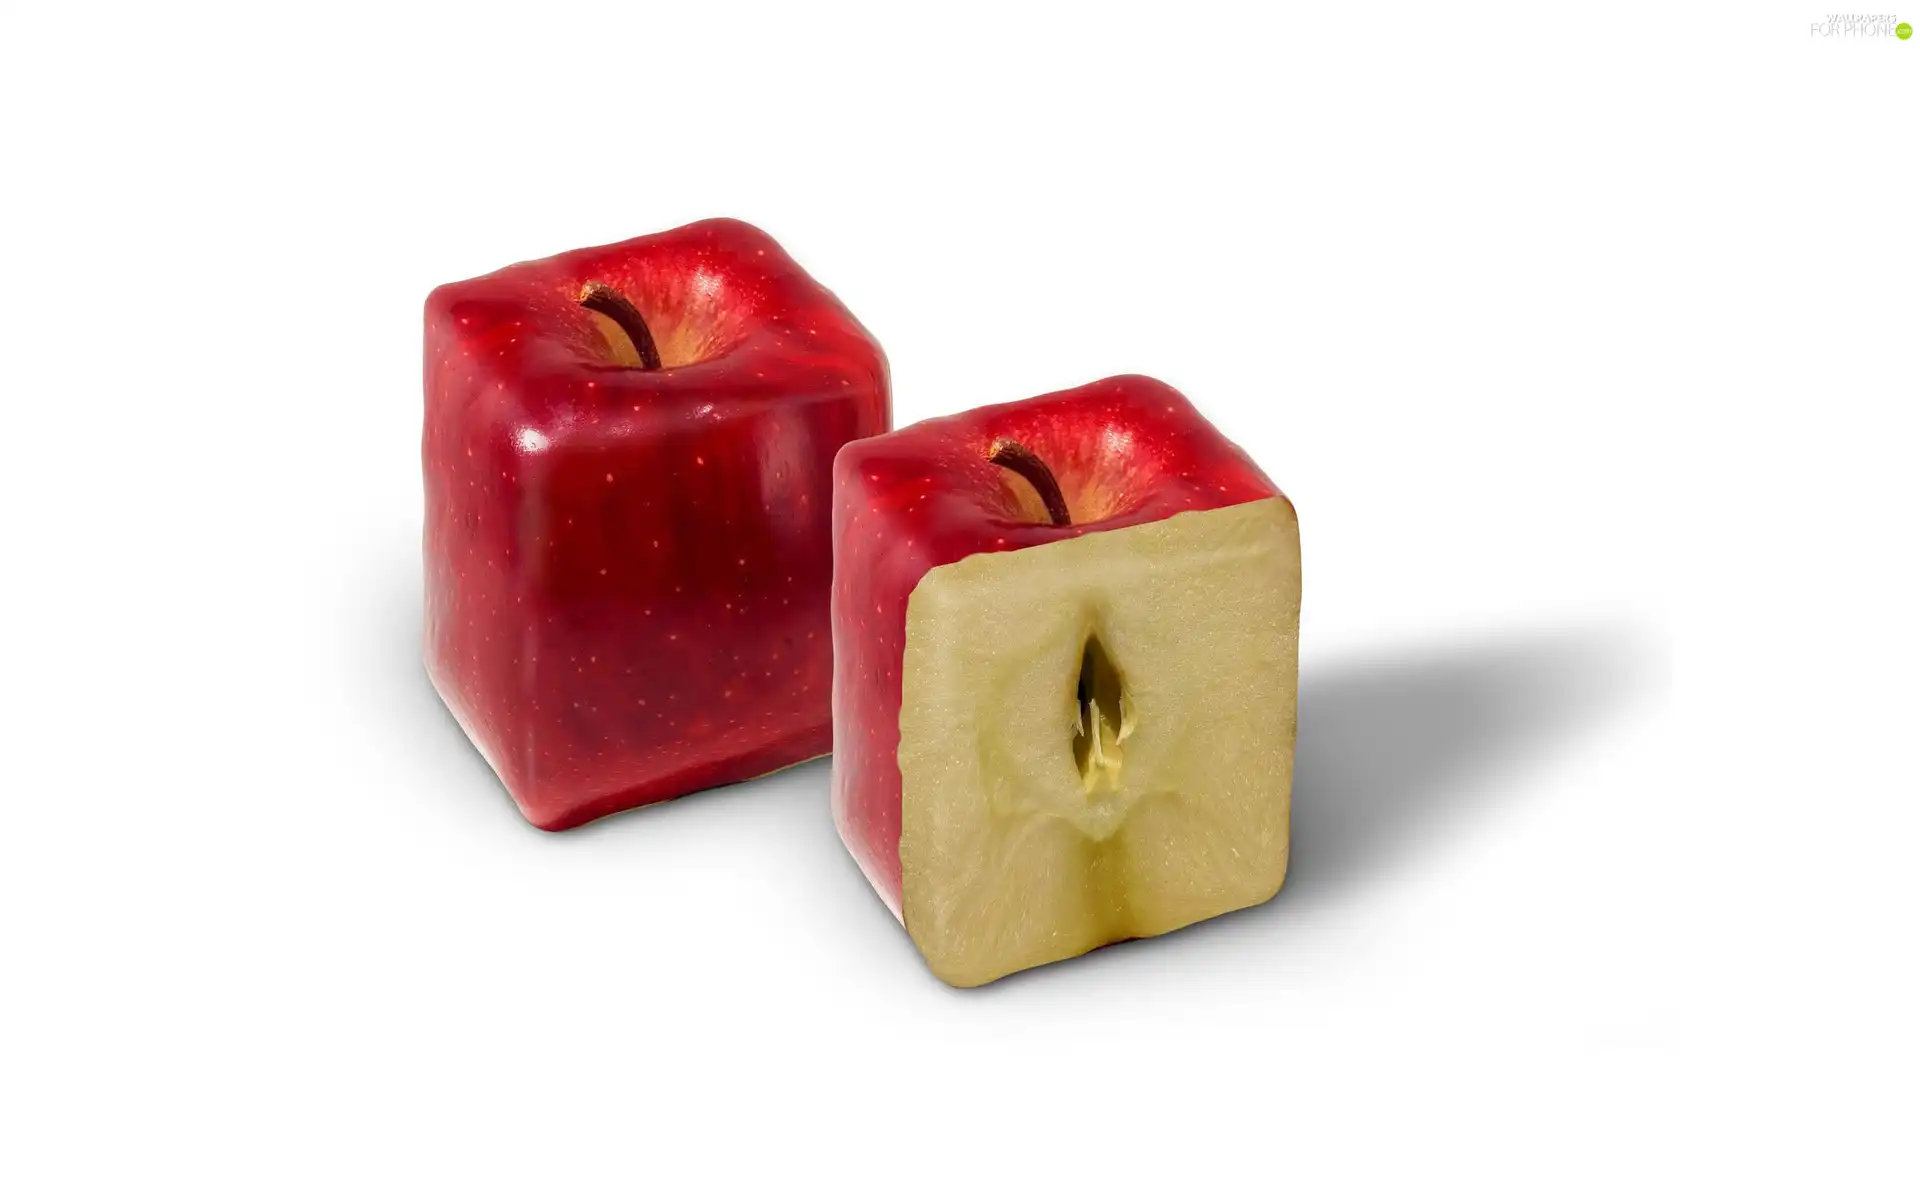 cubic, apples